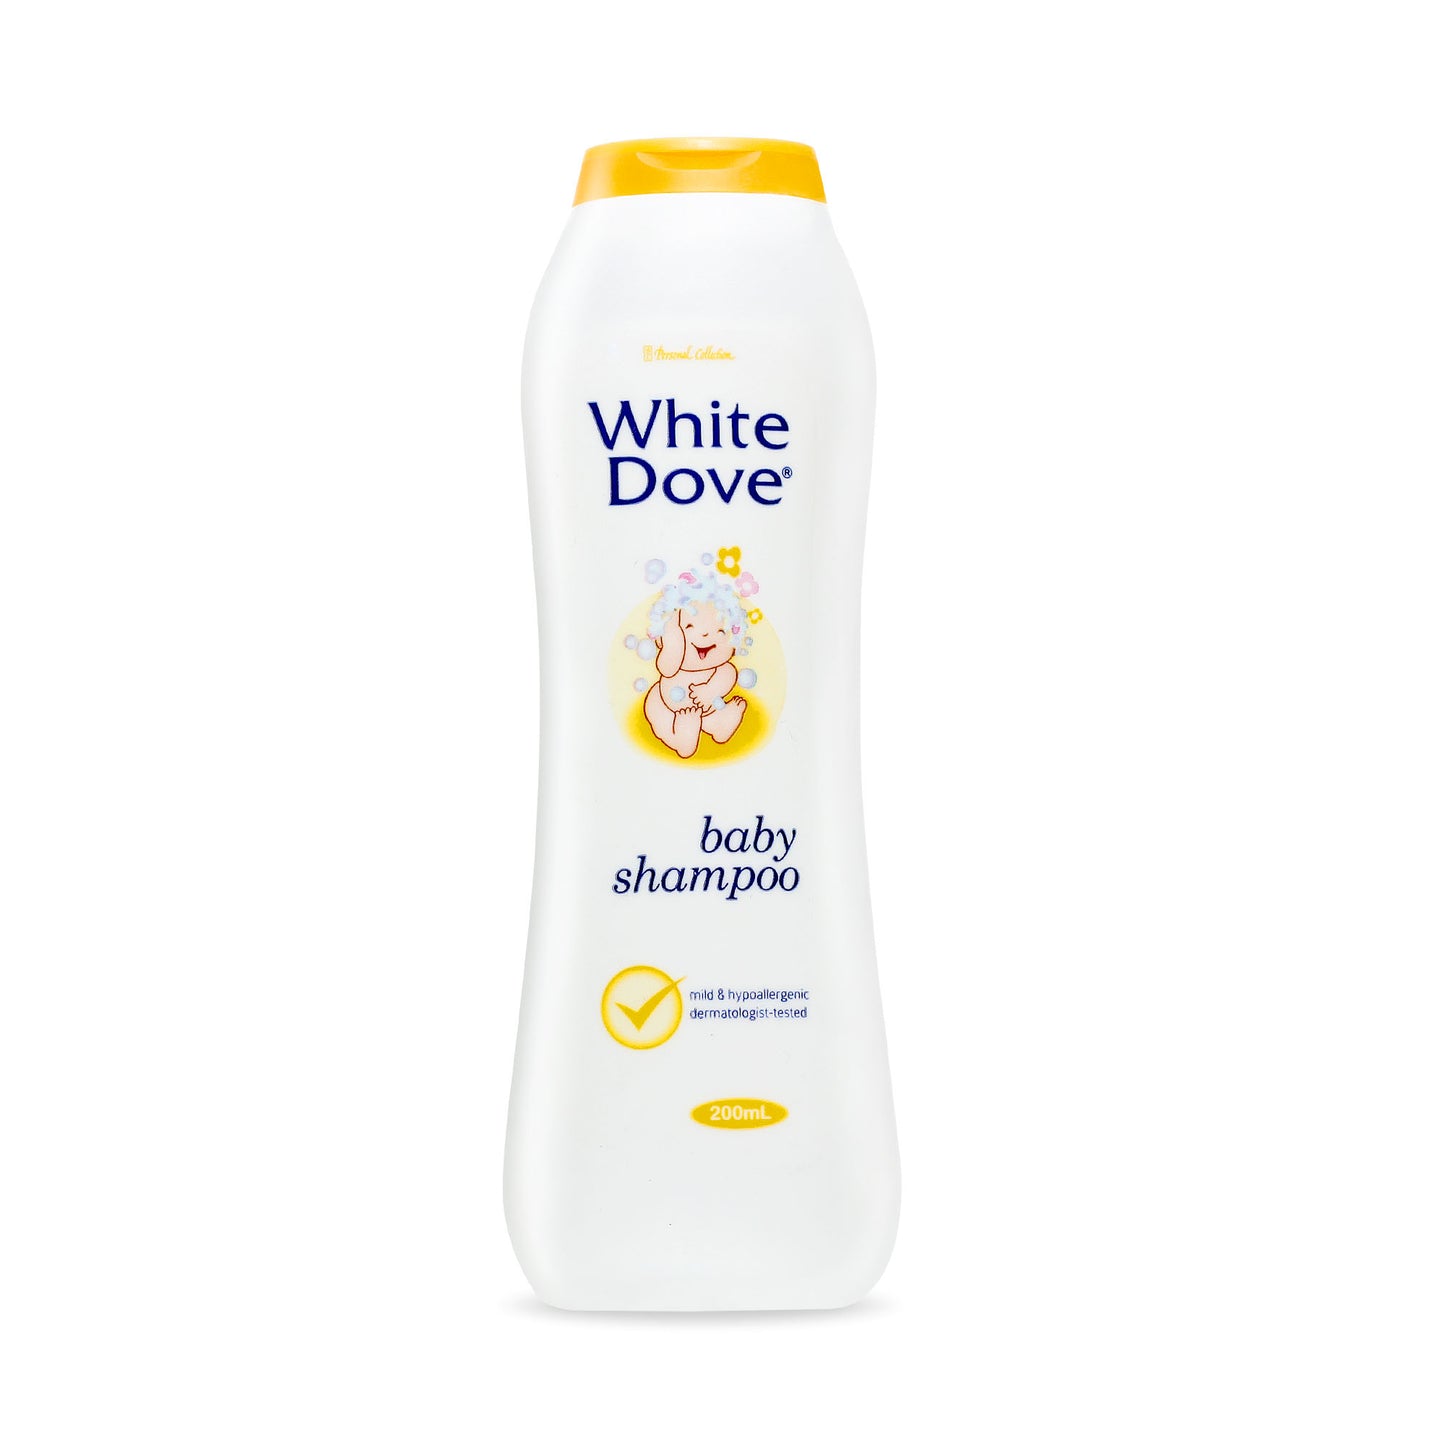 White Dove Baby Shampoo 200 mL